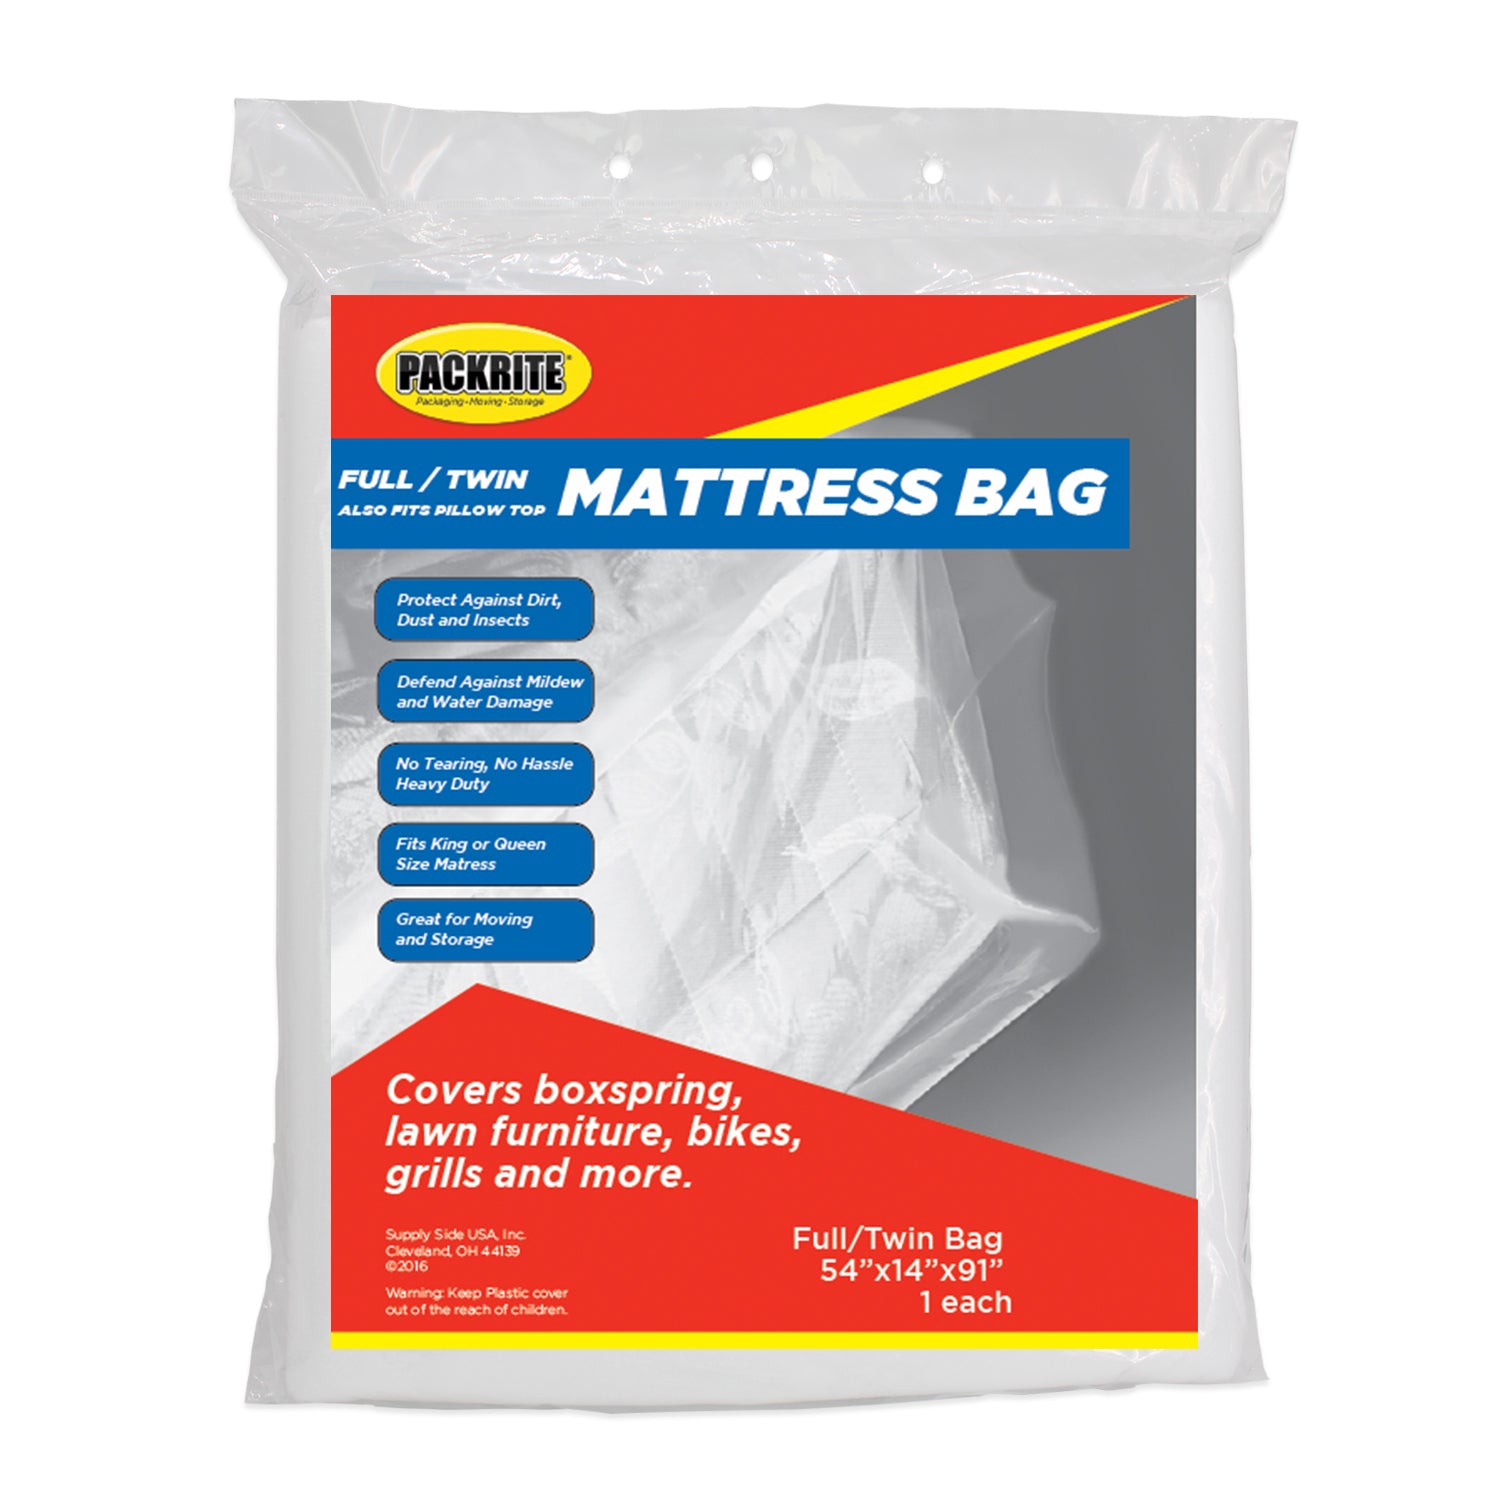 Full / Twin Mattress Bag